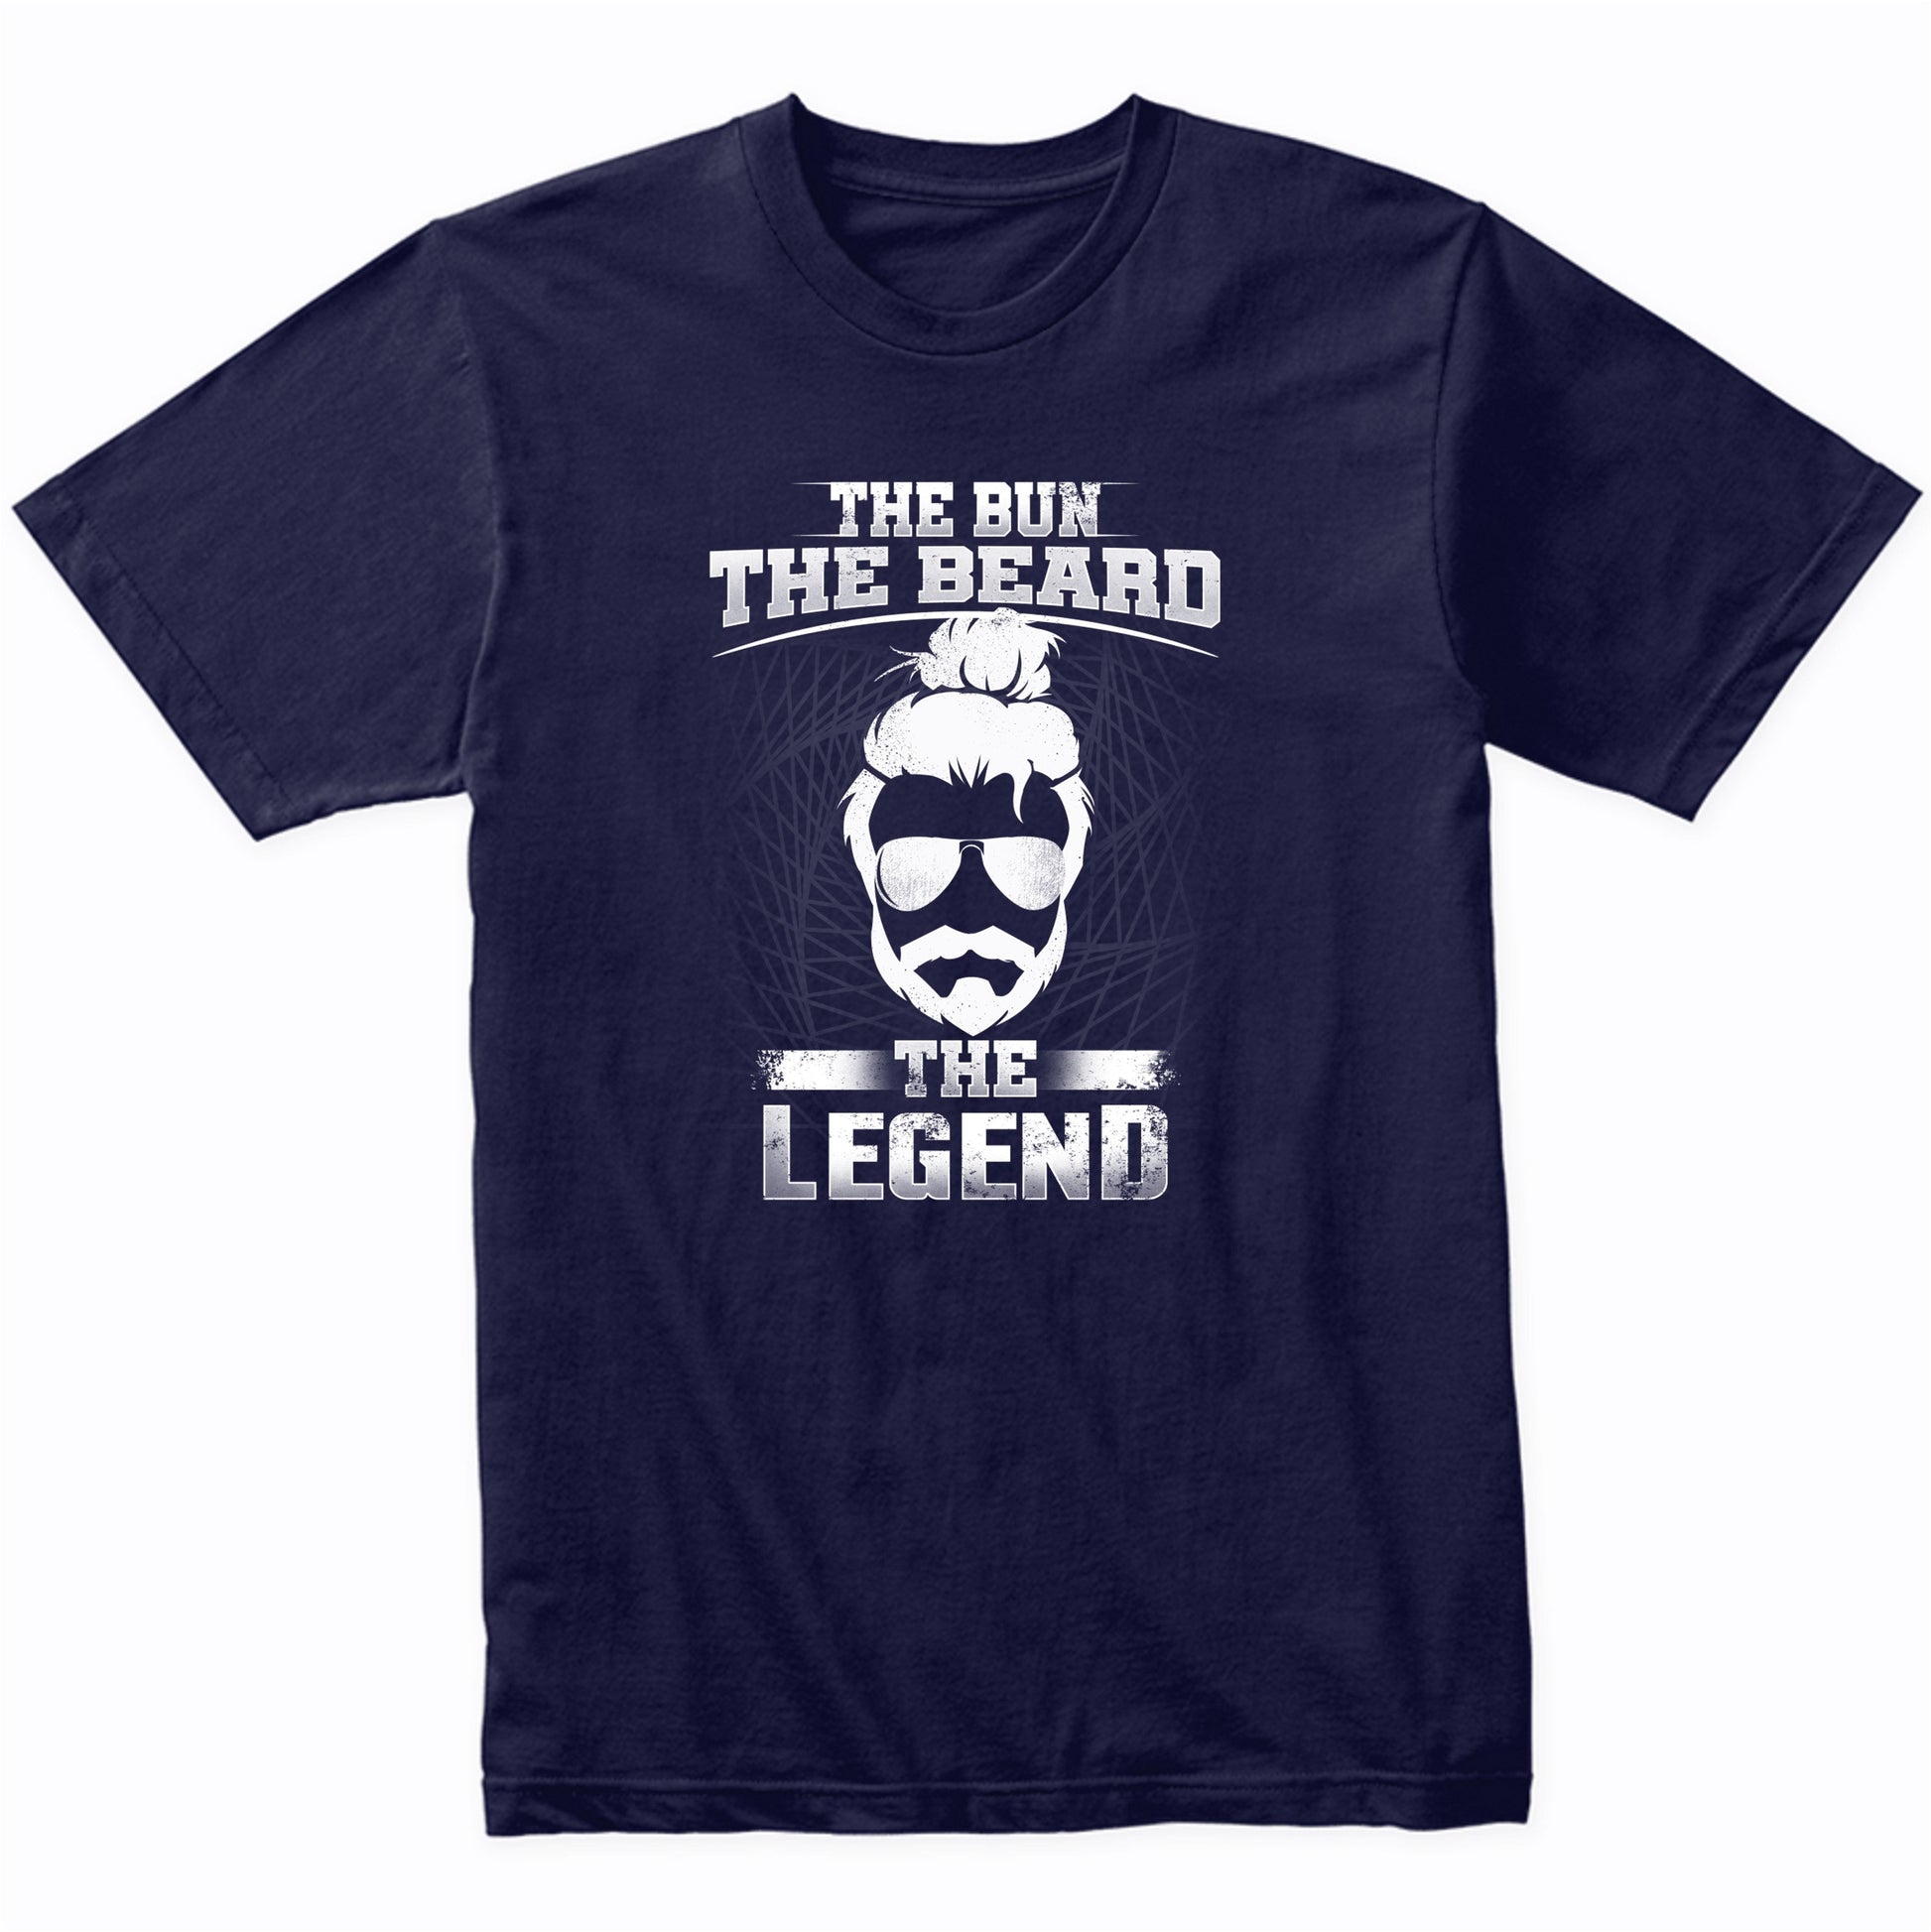 Man Bun Shirt - The Bun The Beard The Legend Funny Man Bun T-Shirt